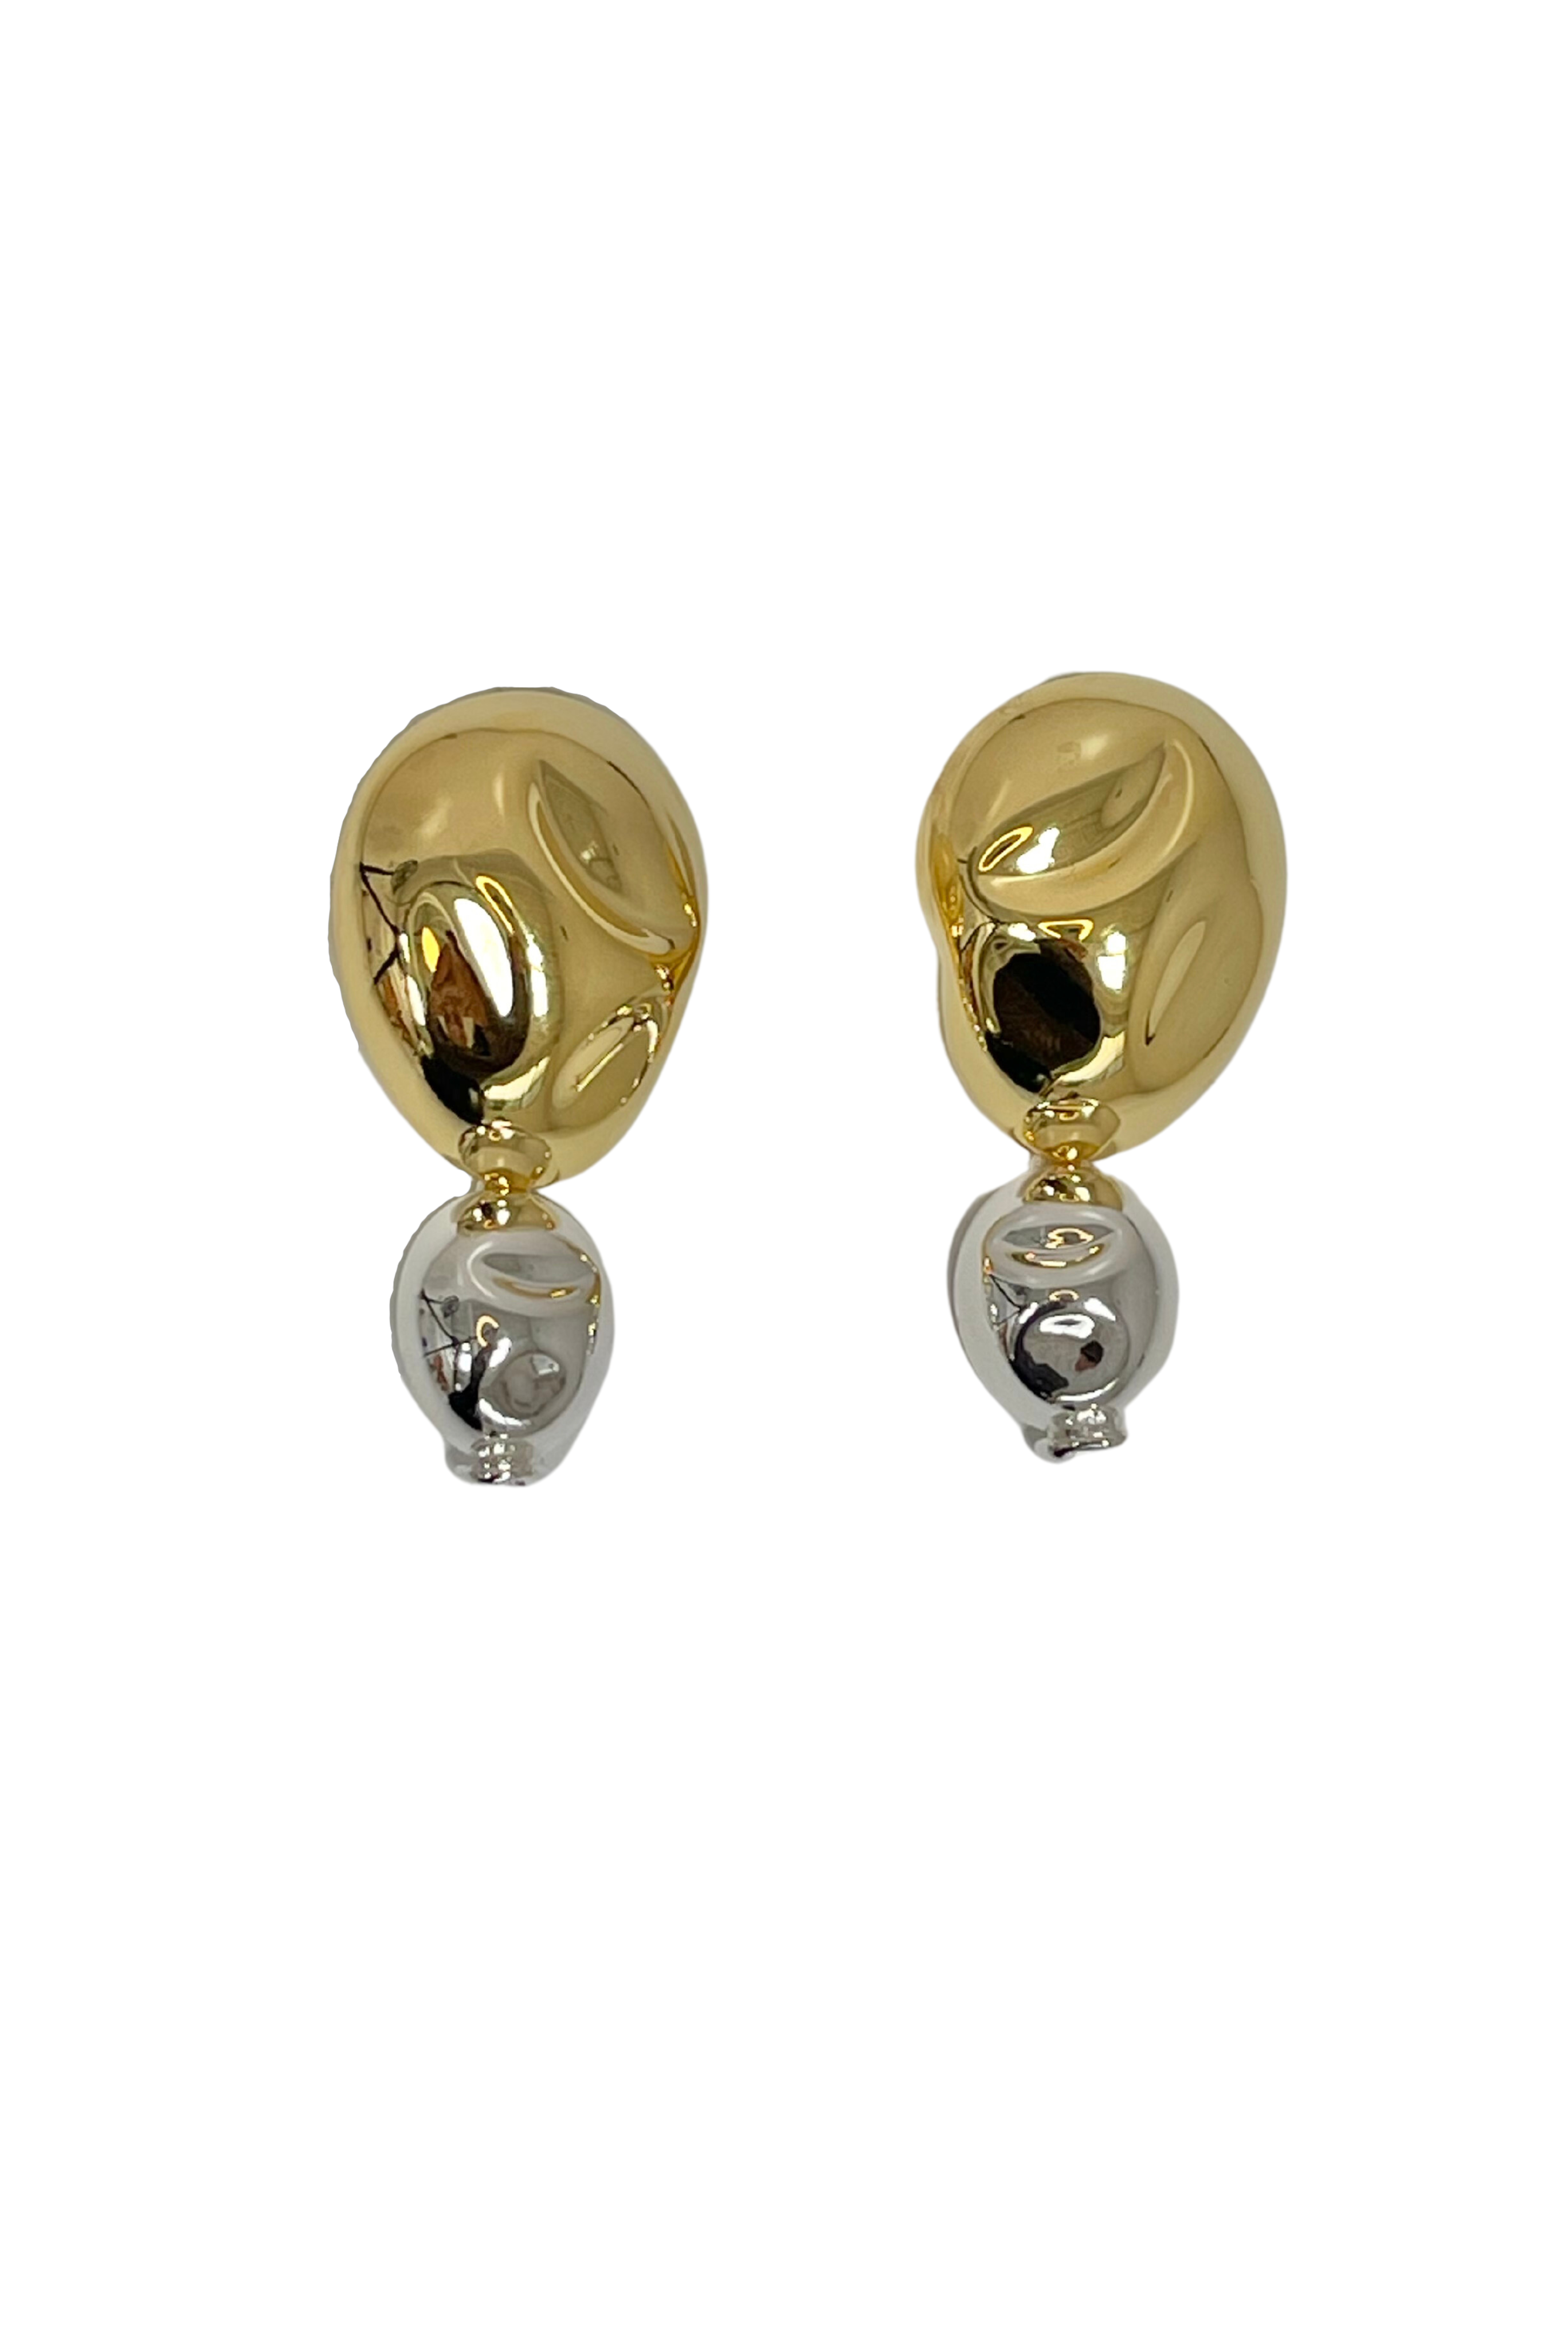 SORDO Oriente Earrings in Gold